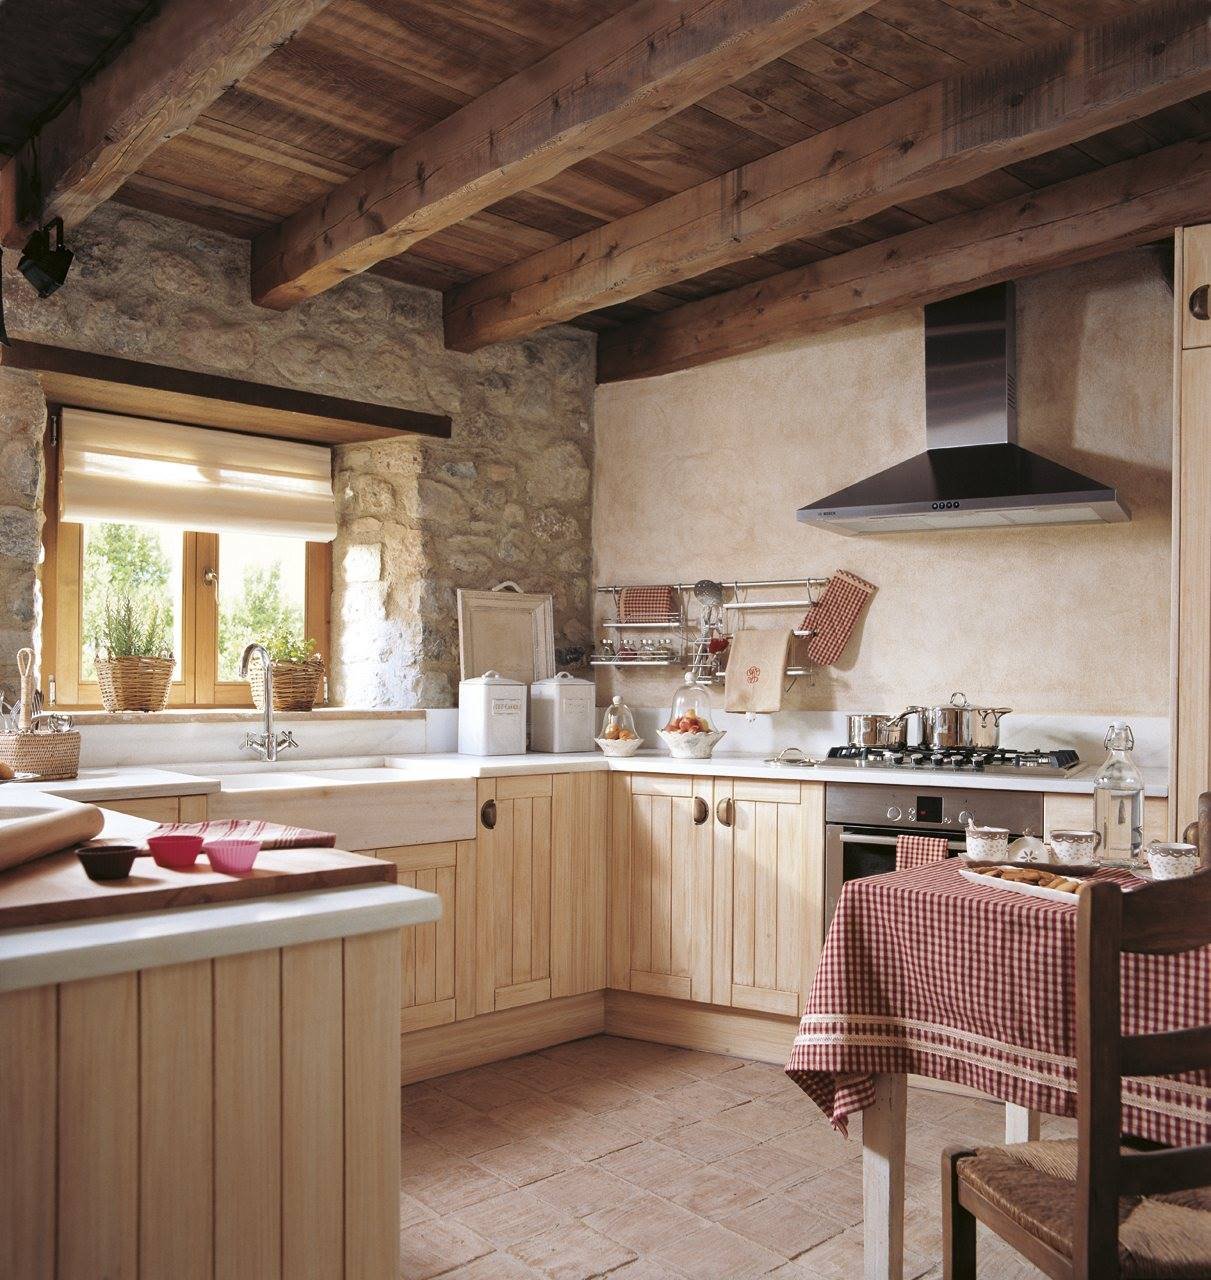 Кухня в деревенском стиле (44 фото): видео-инструкция по оформлению дизайна интерьера своими руками, какую мебель, занавески, подобрать, цена, фото